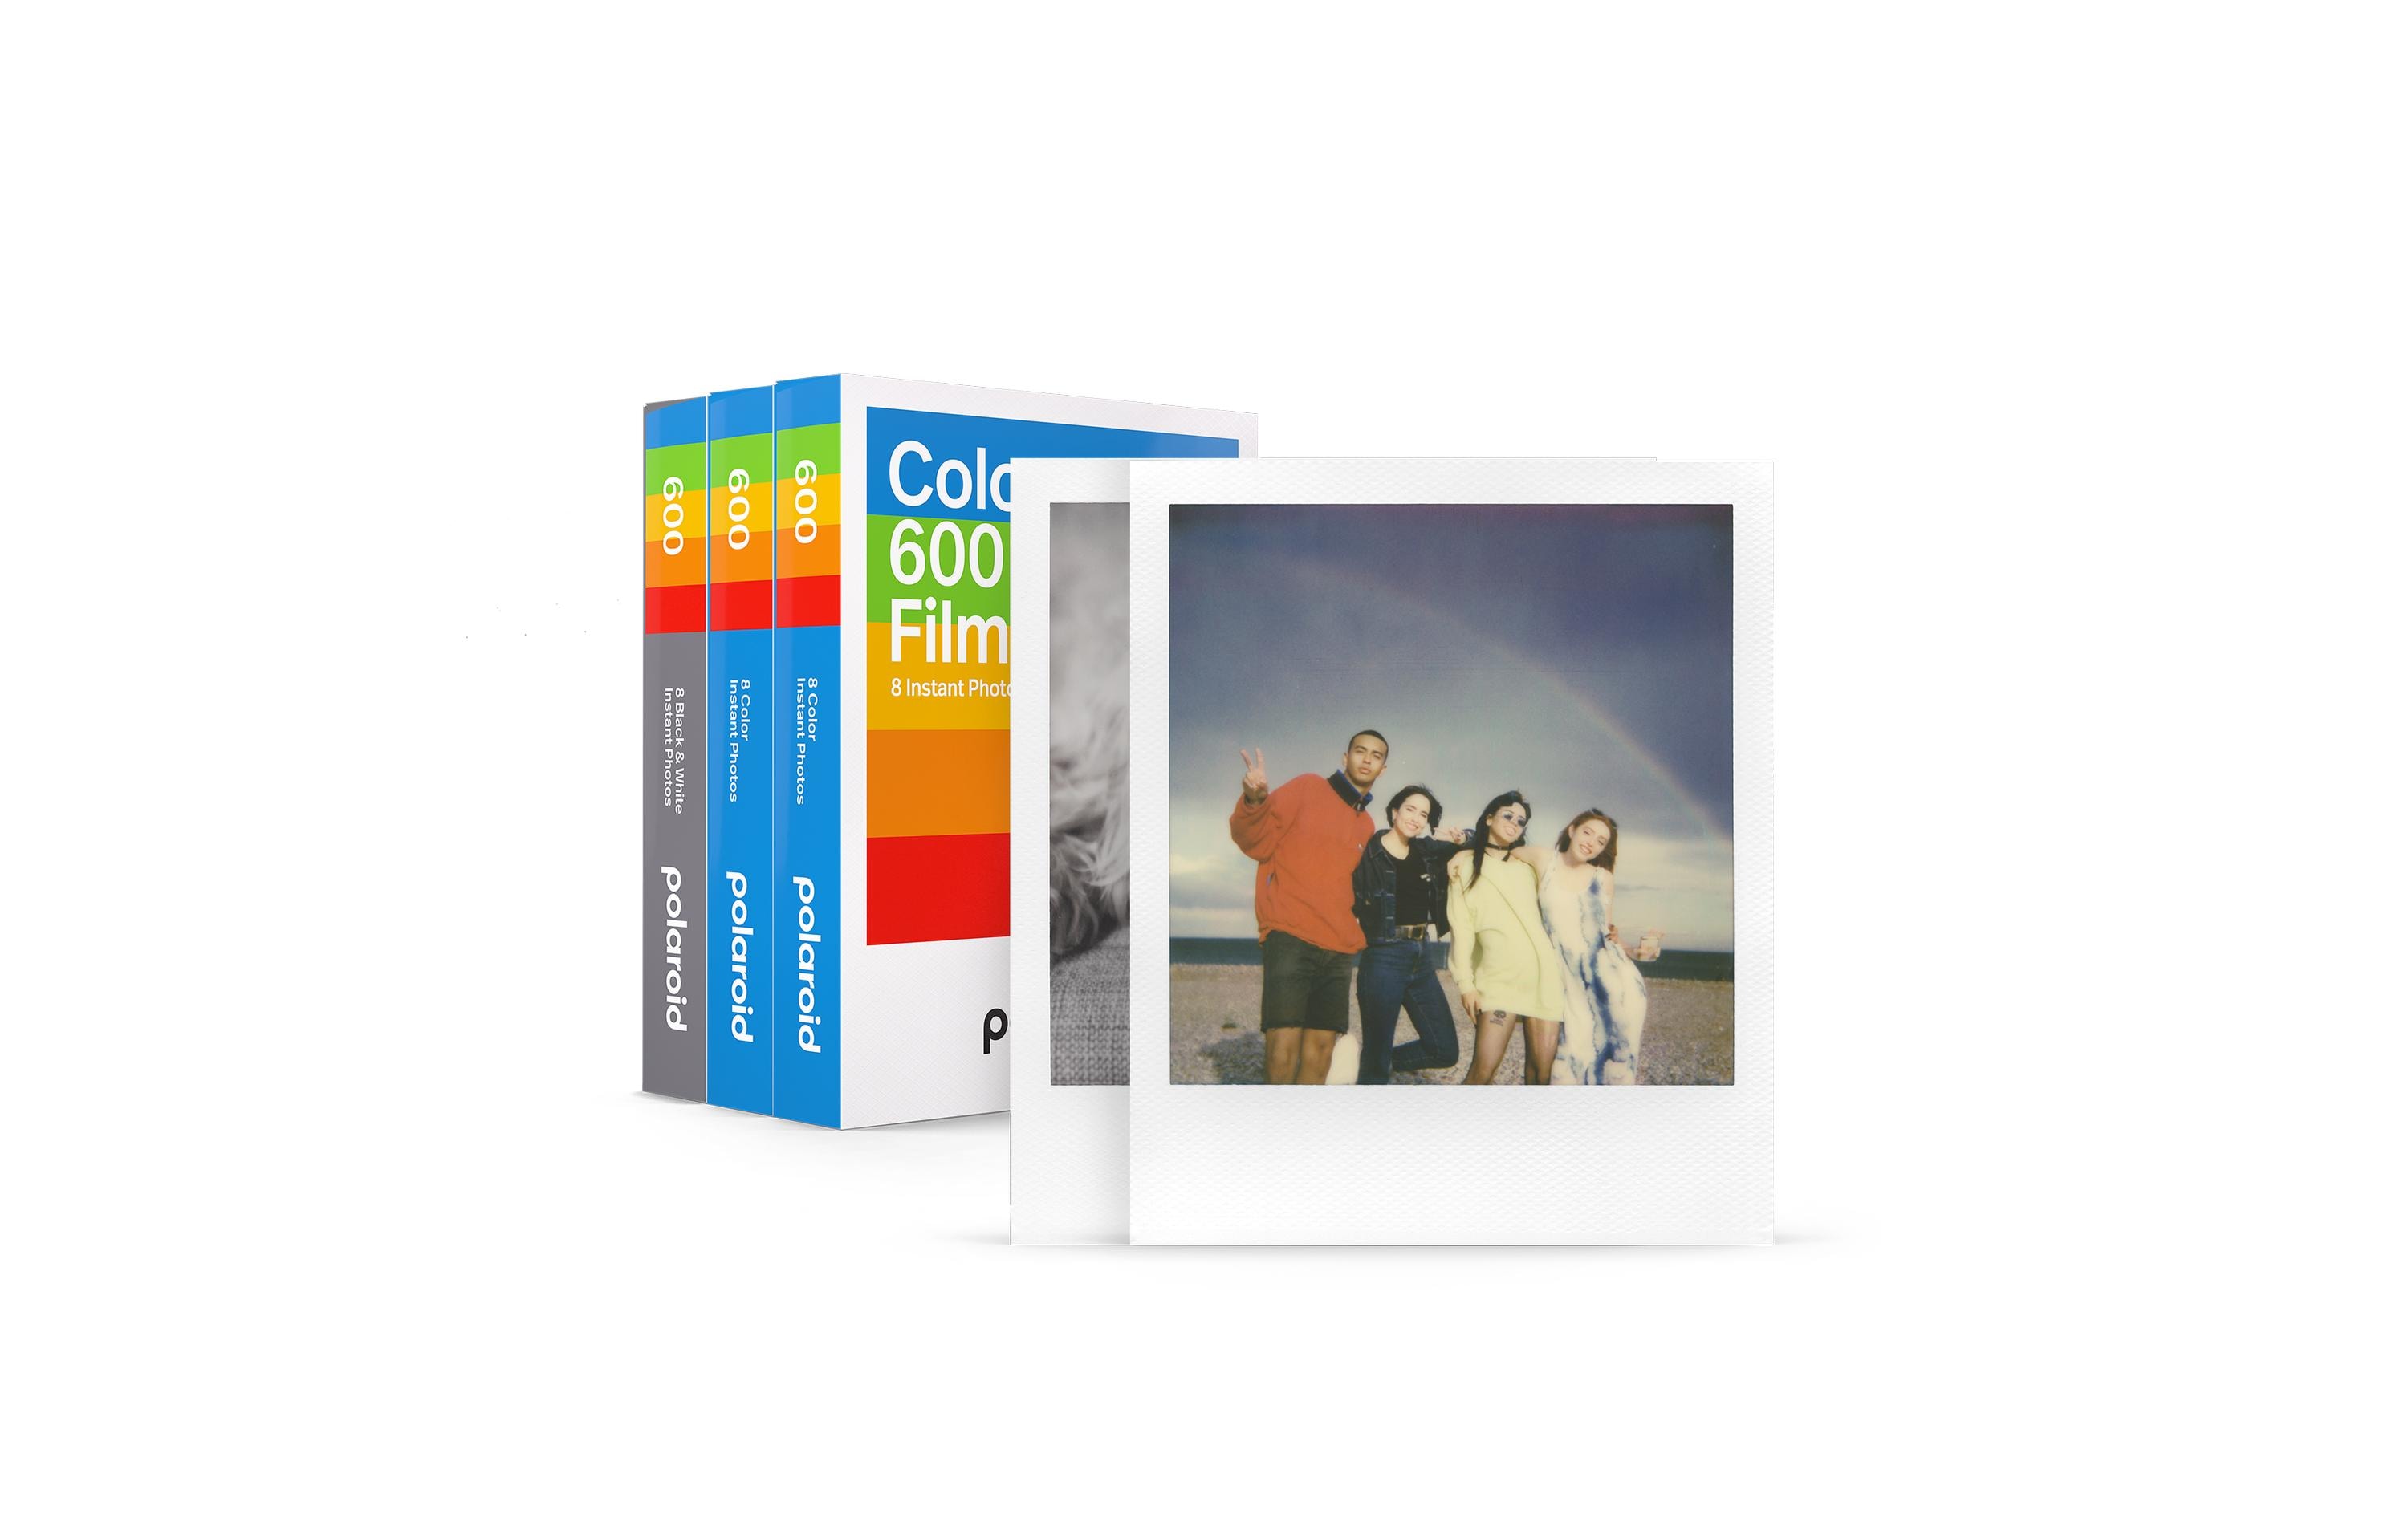 Polaroid Sofortbildfilm 600 Core Triple Pack